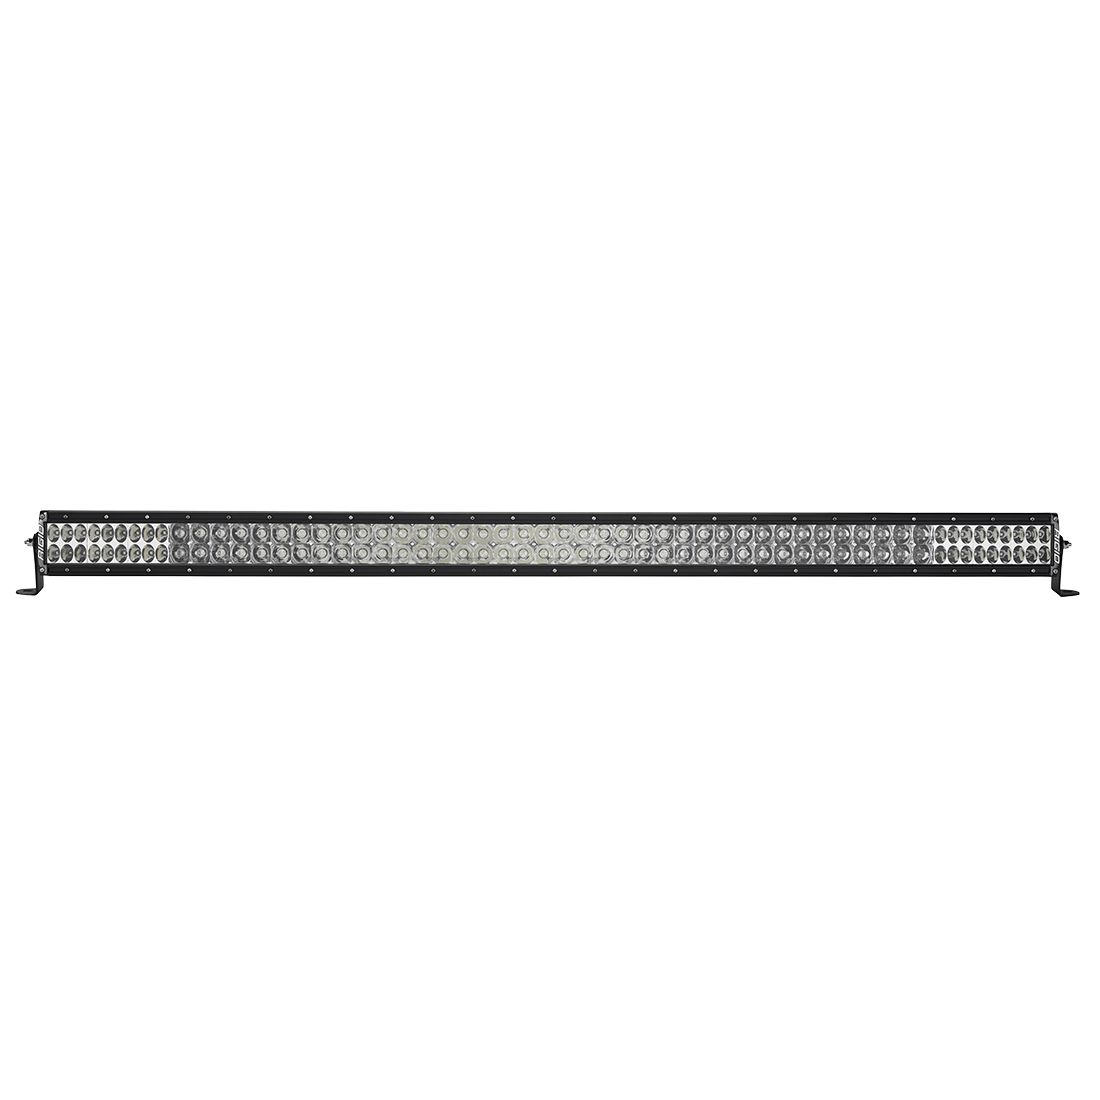 Rigid E-Series Pro Light Bars (Sizes 4''-50'')